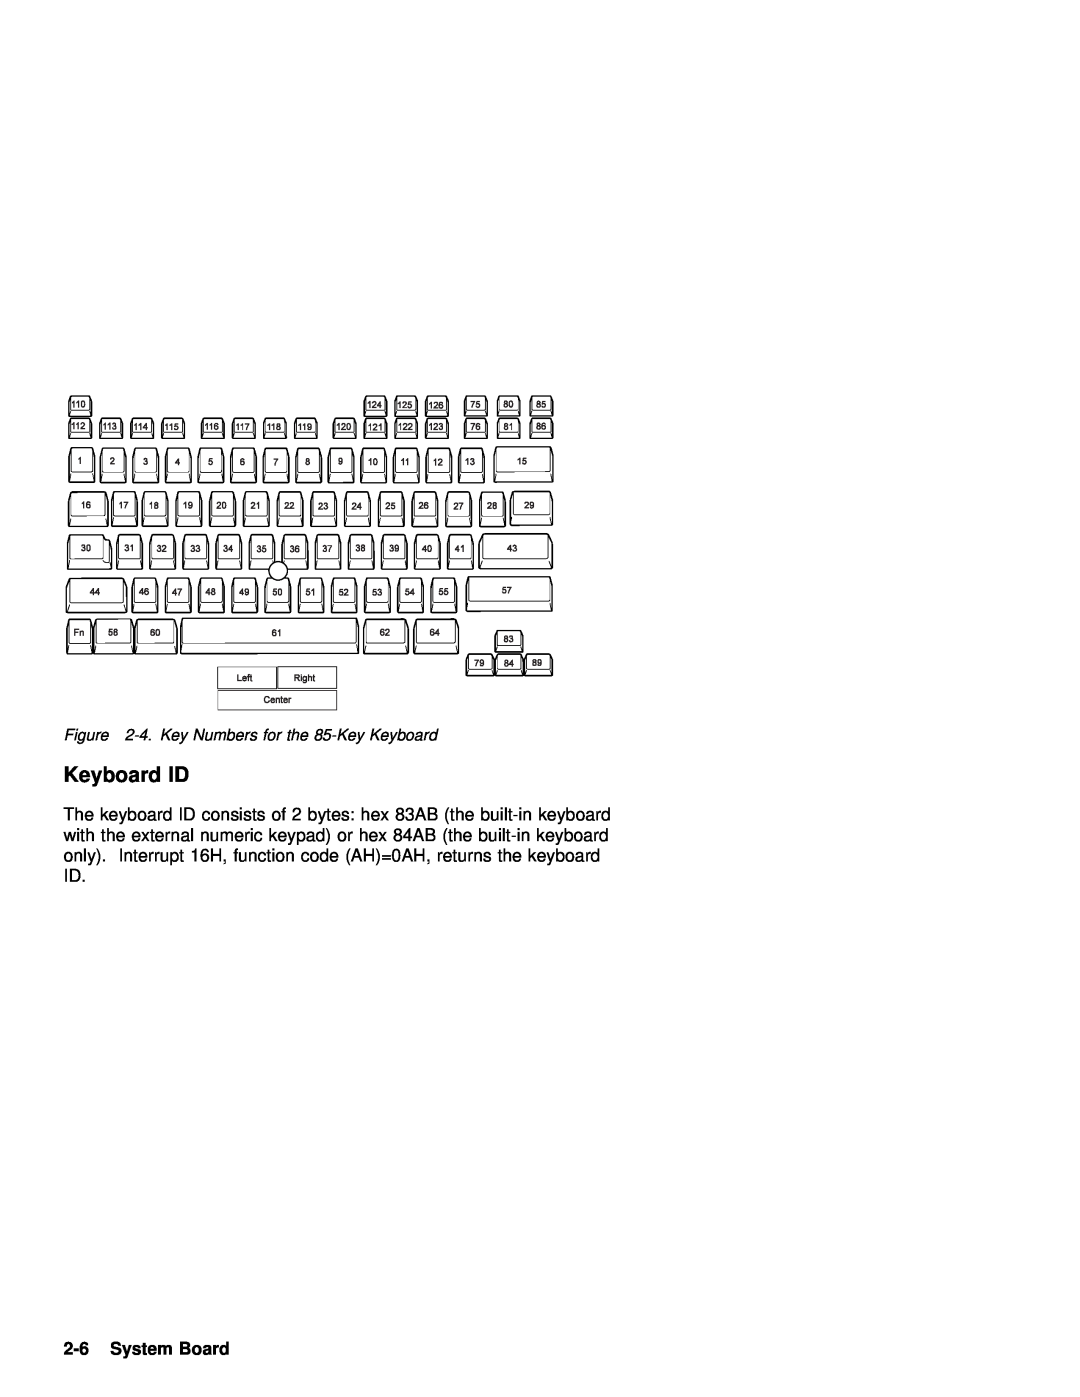 IBM 770 manual Keyboard ID, System Board 